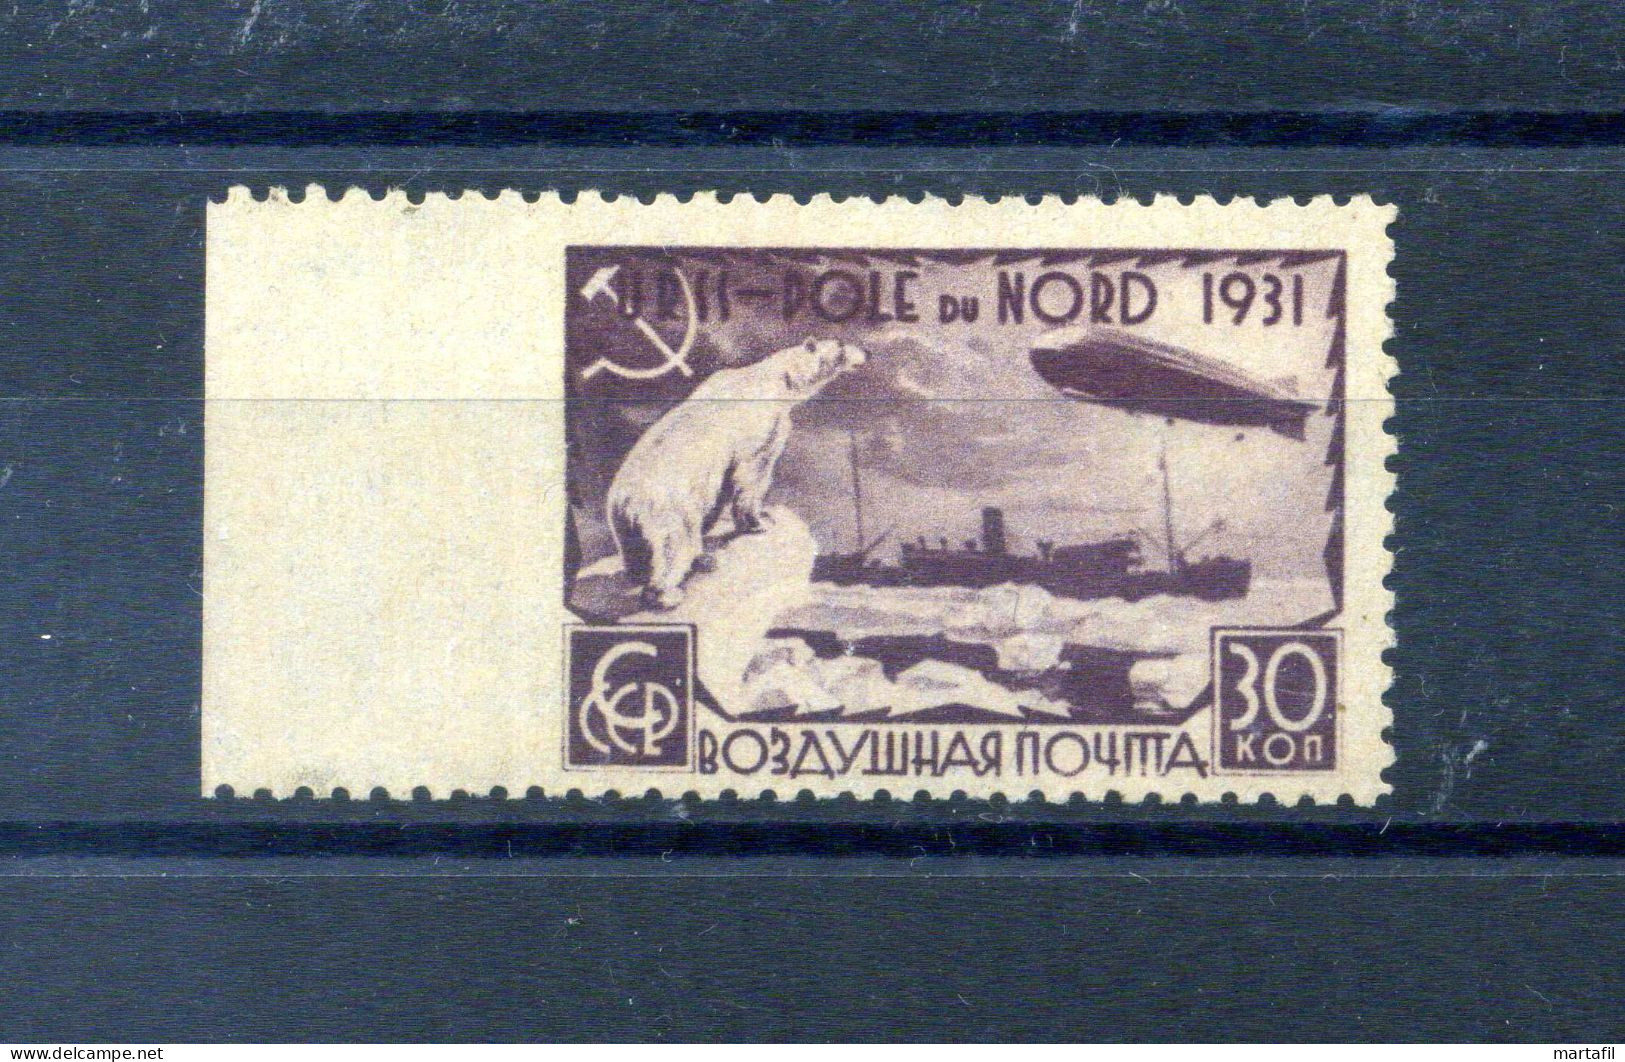 1931 URSS A27 30k. MNH ** Varietà - Non Dentellato A Sinistra - Timbrino Kubler - Graf Zeppelin Polo Nord - Variedades & Curiosidades